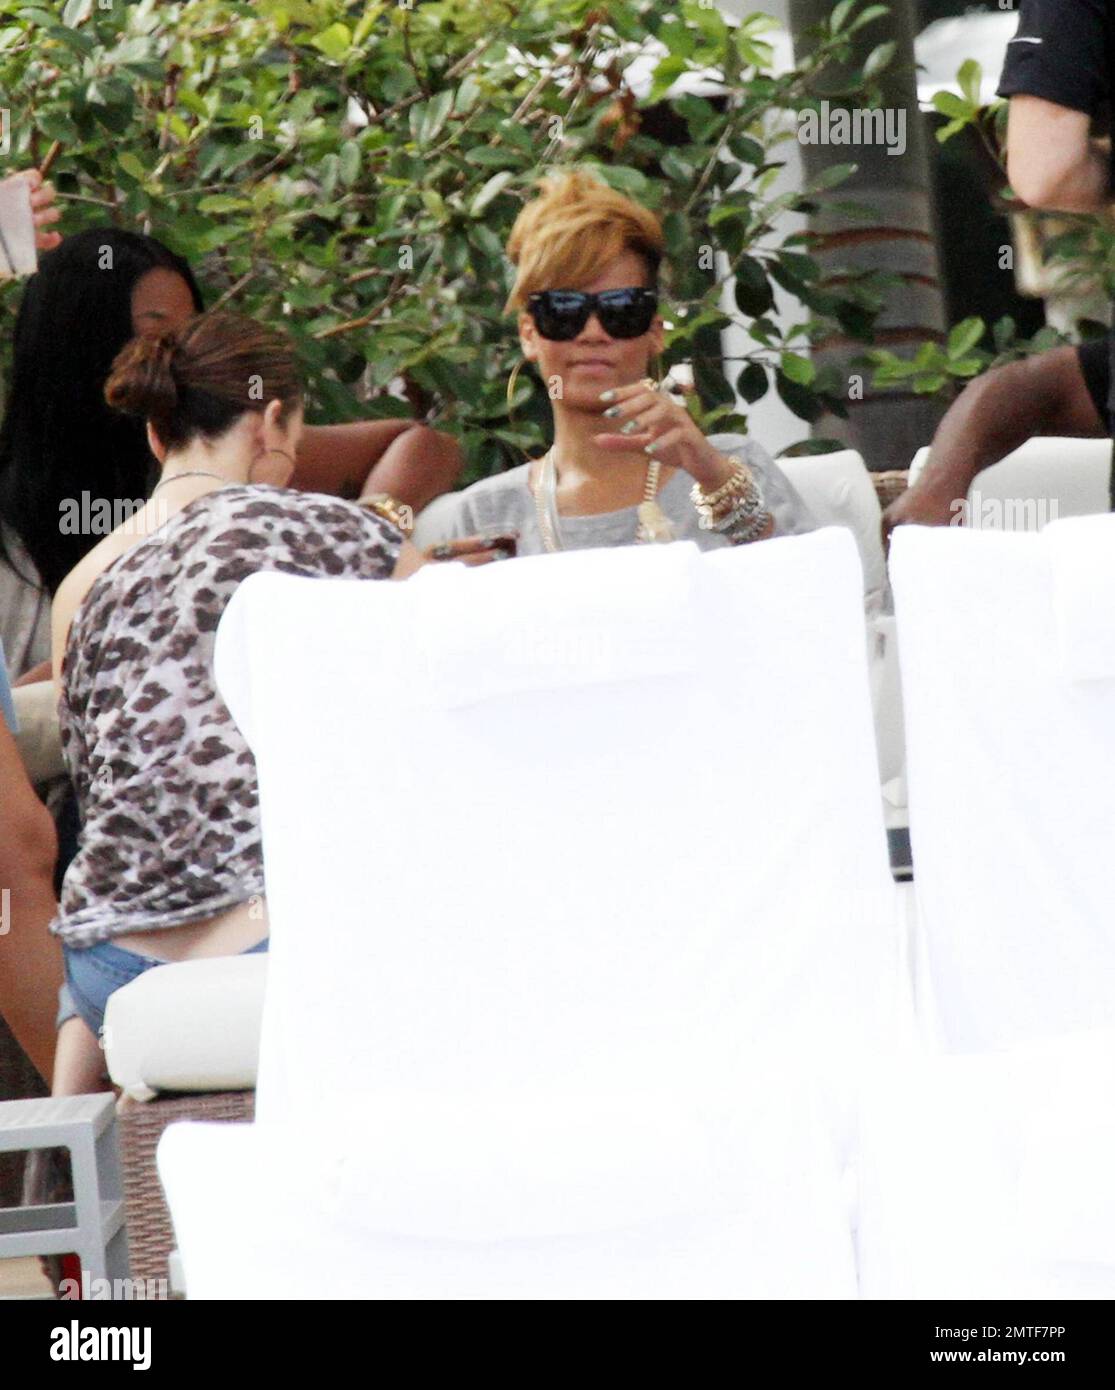 Rihanna wird während eines entspannten Nachmittags am Pool des Fontainebleau Miami Beach umarmt. Der Songstress, der Rosenwein trank, plauderte und lachte mit Freunden in einer privaten Cabana für ein paar Stunden. Rihanna trug ein ganz graues Outfit mit einem T-Shirt, Shorts und Schuhen mit hohen Absätzen und Accessoires mit großen Ohrringen und einer goldenen Halskette. Miami, Florida 2/5/10. Stockfoto